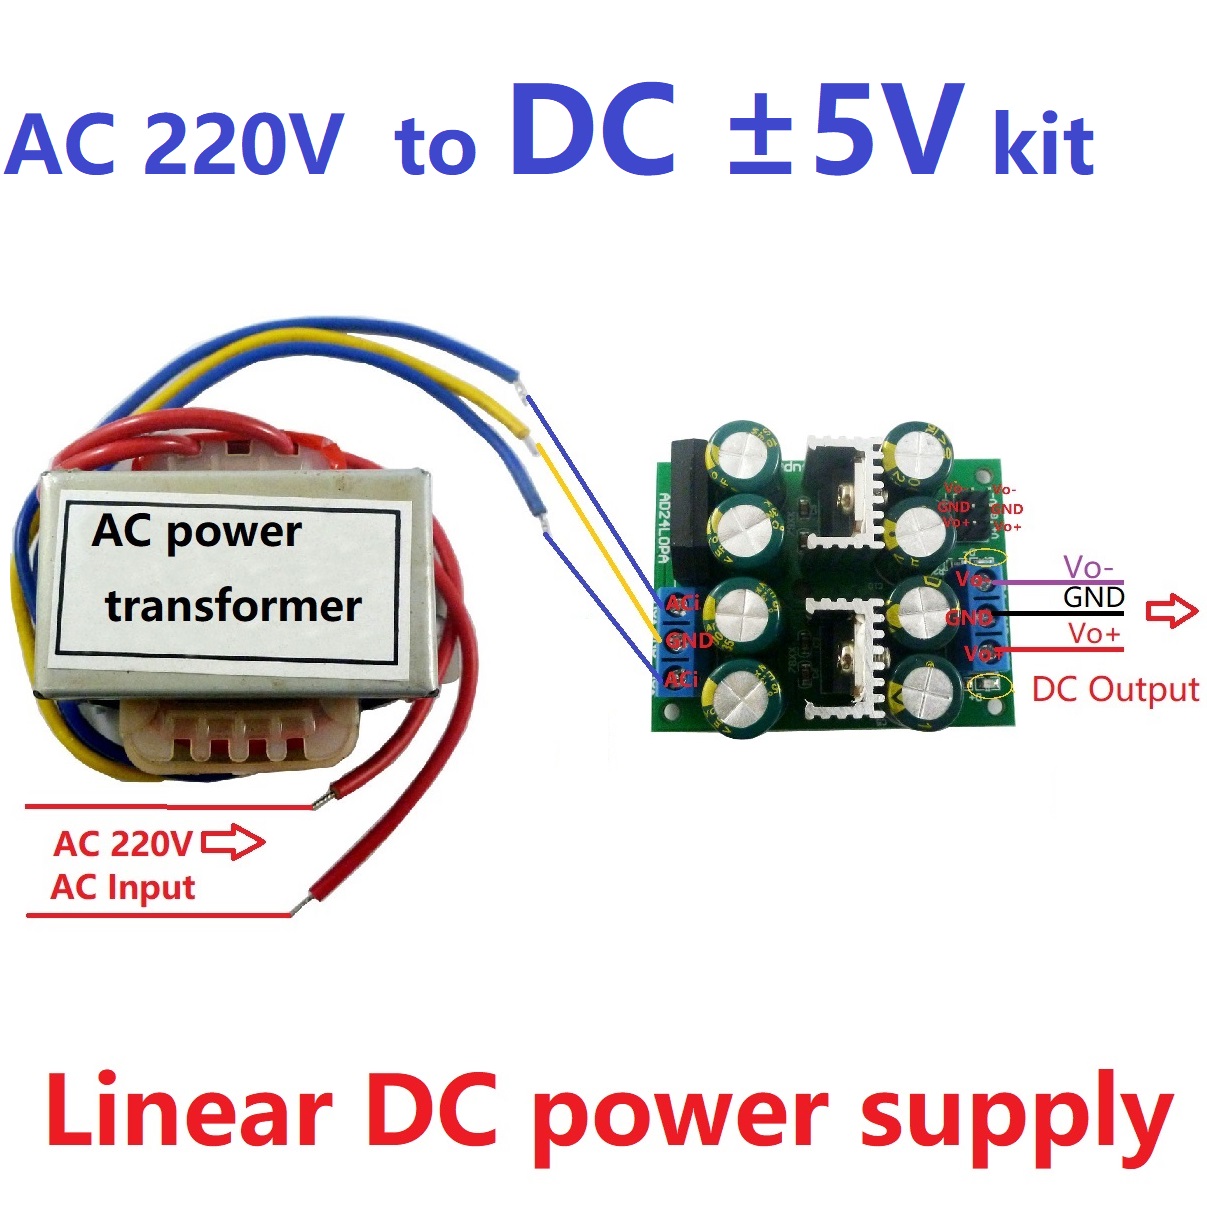 12W-AC220V-to-Dual-DC--5V12V15V-Low-Noise-Linear-Power-Supply-Kit-AC-DC-78XX-79XX-LDO-Module-for-Spe-1717974-3